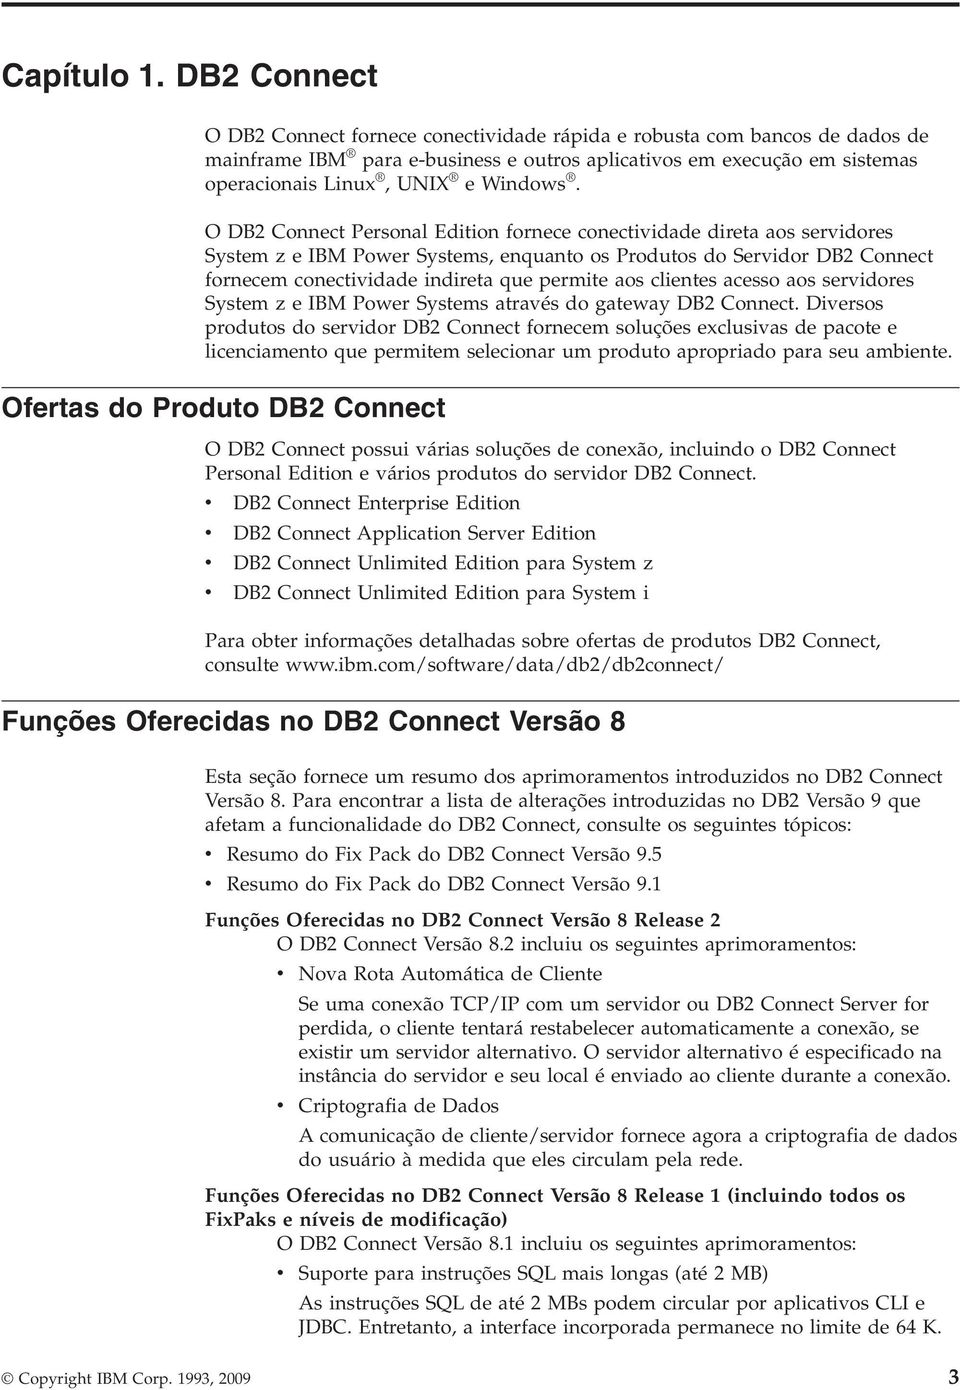 O DB2 Connect Personal Edition fornece conectiidade direta aos seridores System z e IBM Power Systems, enquanto os Produtos do Seridor DB2 Connect fornecem conectiidade indireta que permite aos